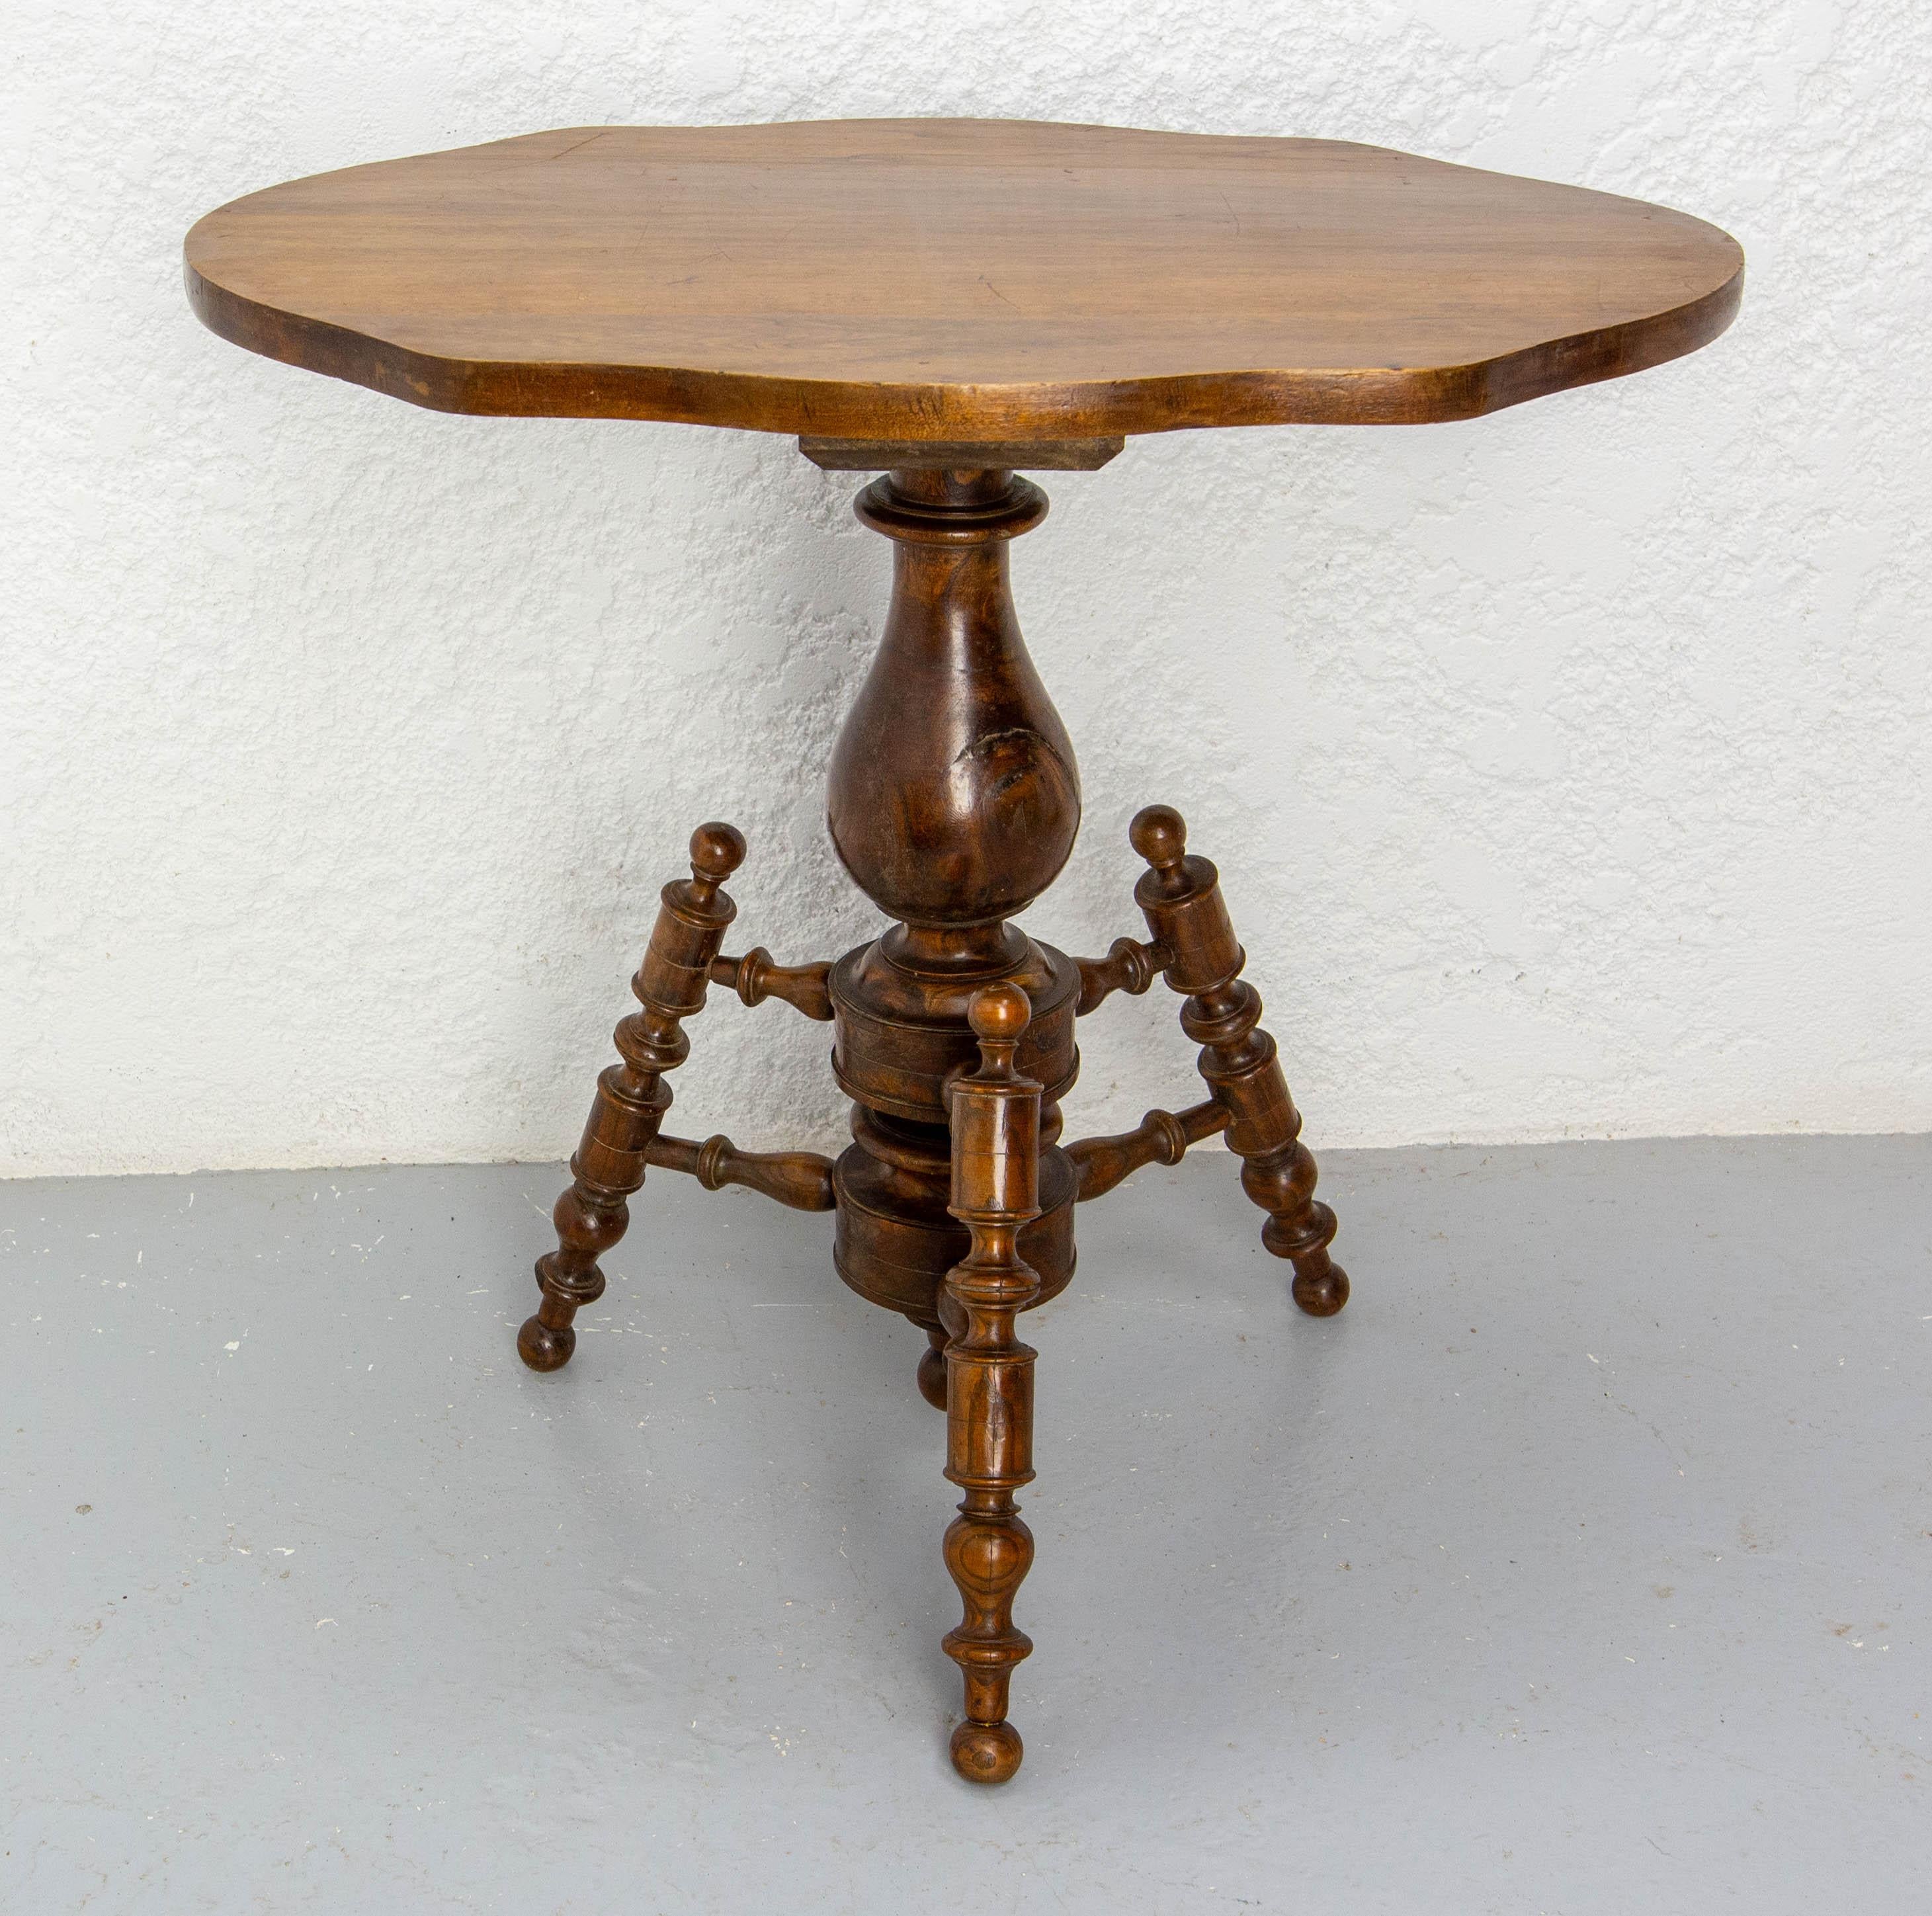 Beistelltisch aus Ulme und weißem Holz.
Hergestellt um 1920
Der Sockel hat drei Füße.
Sie können diesen Tisch auch als Beistelltisch verwenden.
Solides und massives Design
Guter Zustand.

Versand:
53 / 74 / 70 cm 9 kg.